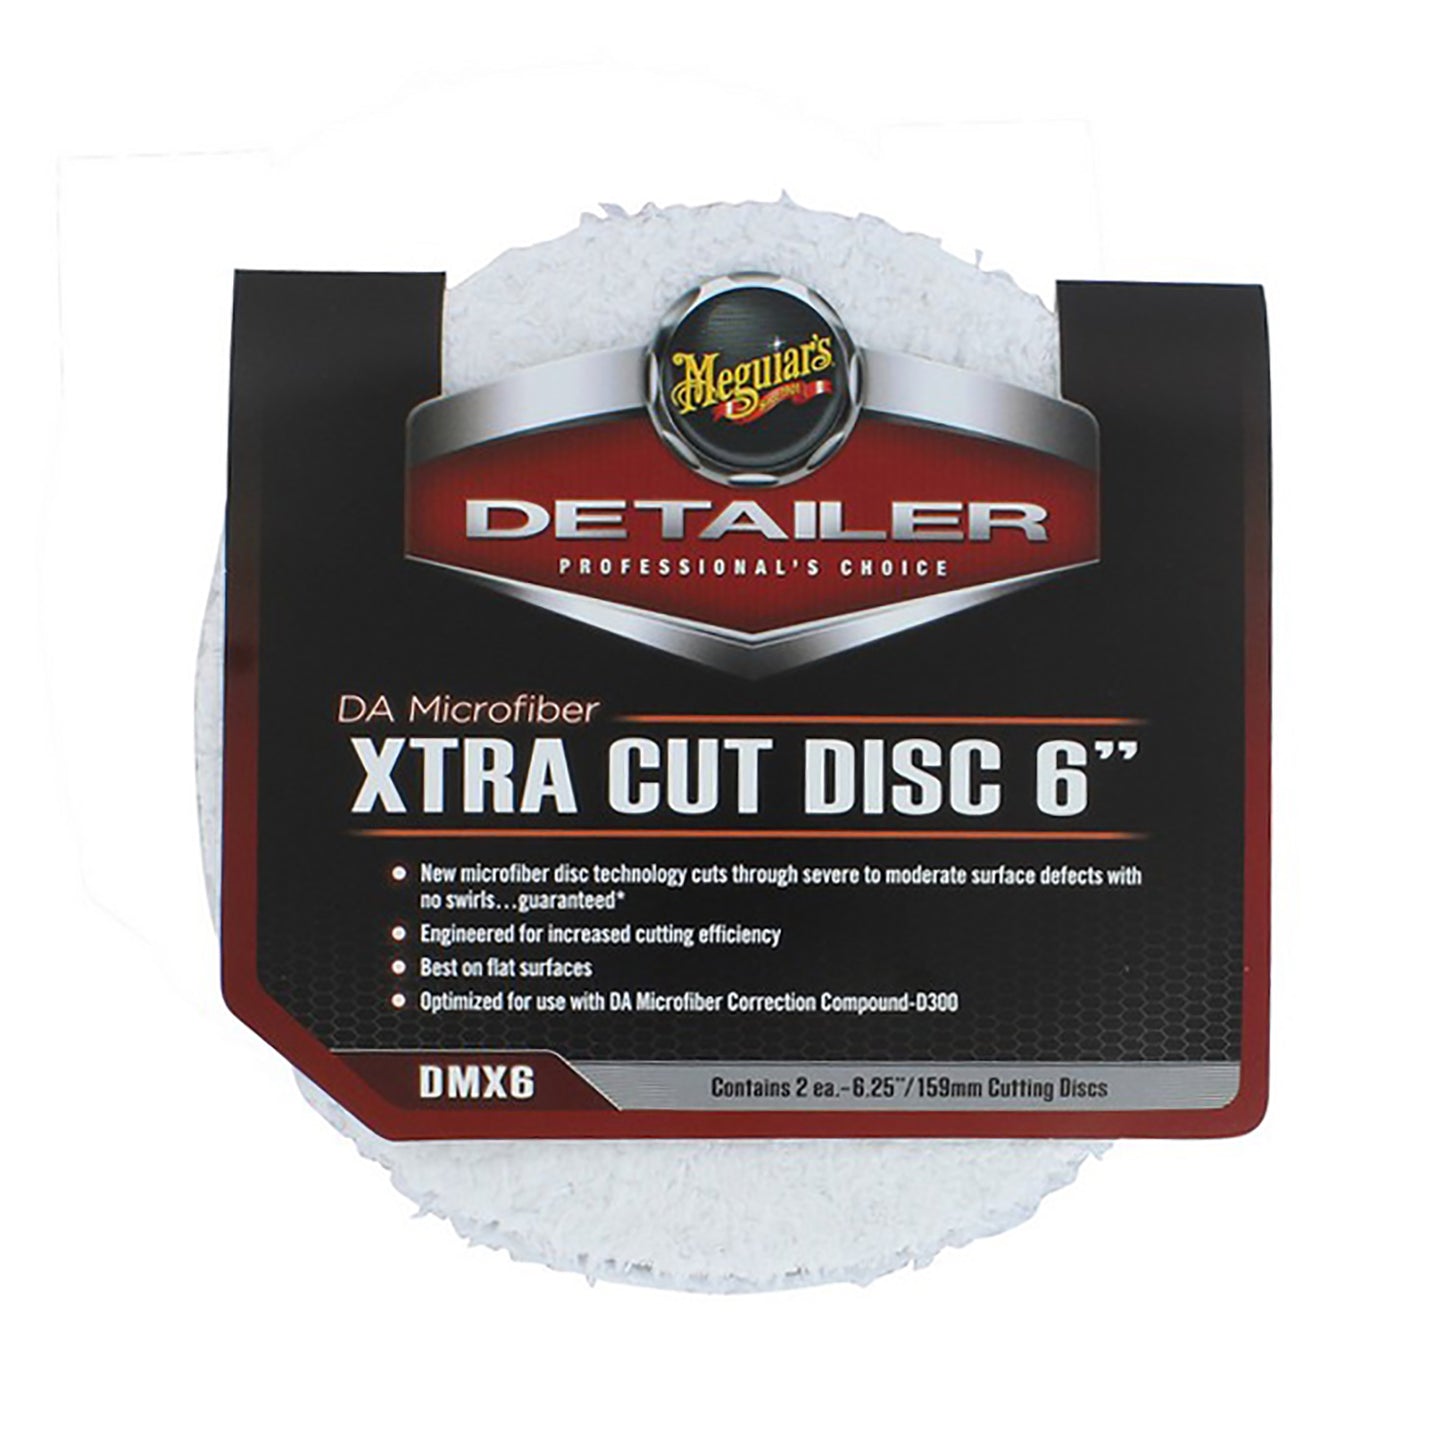 DA Microfiber Xtra Cut Disc